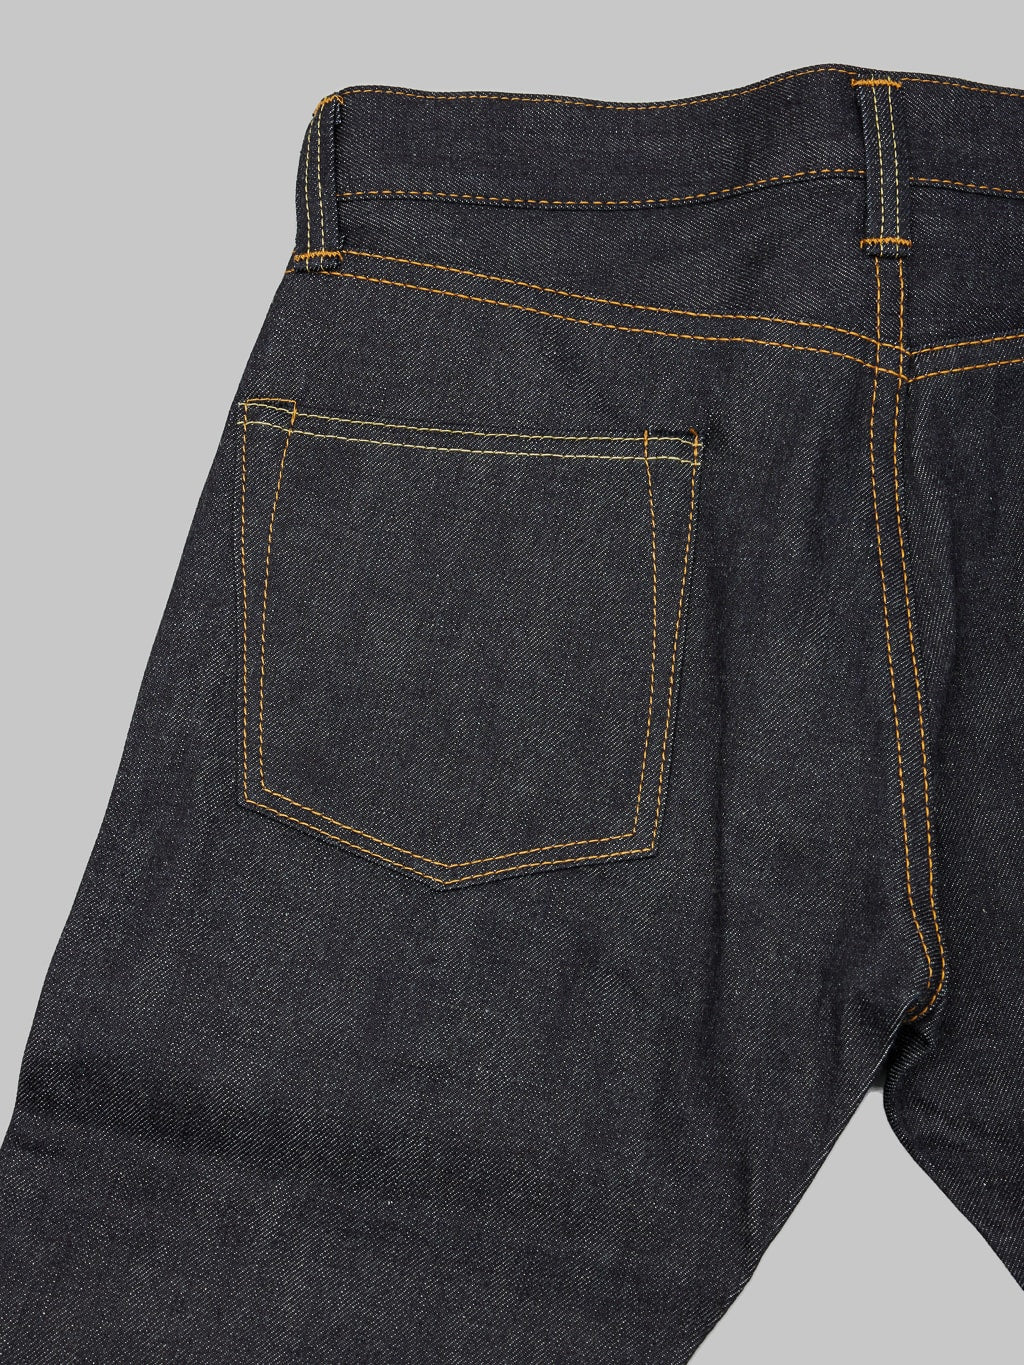 Momotaro 0405 12oz high Tapered Jeans  back pocket